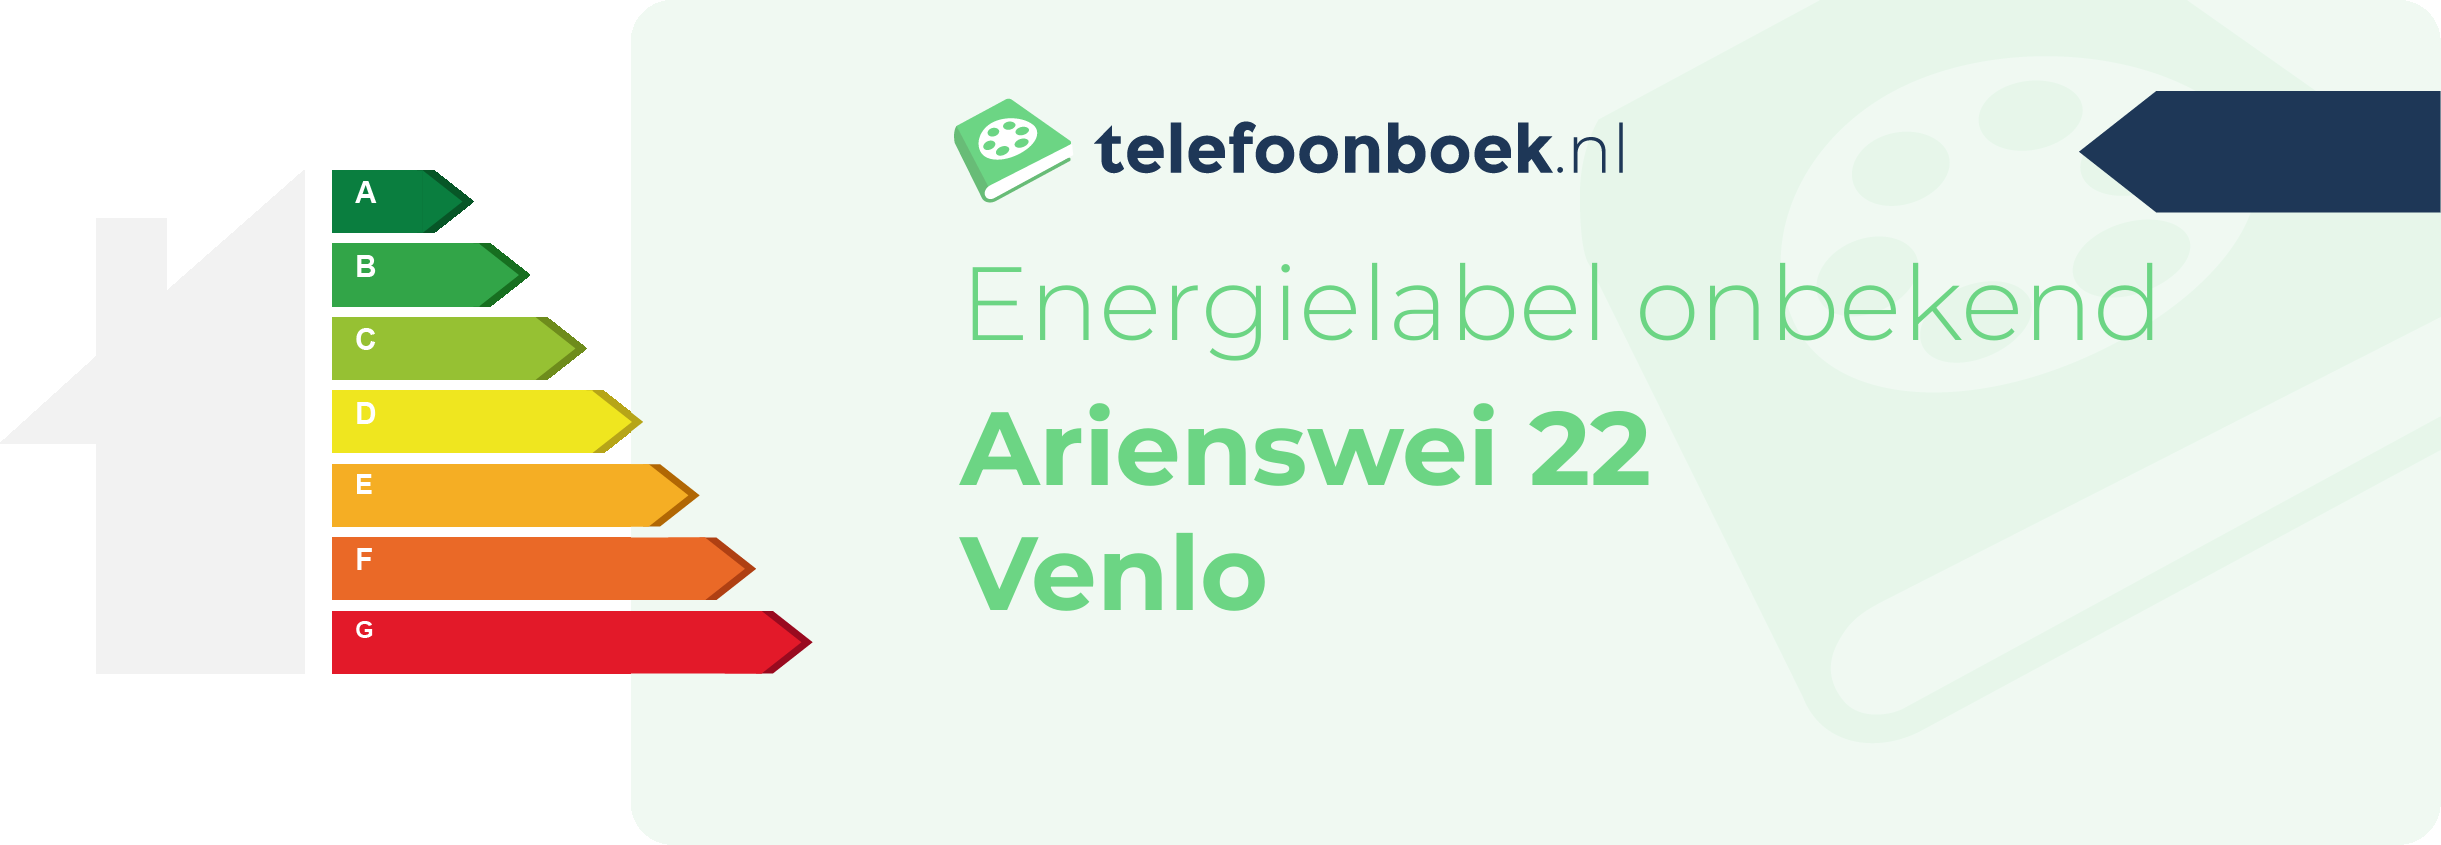 Energielabel Arienswei 22 Venlo